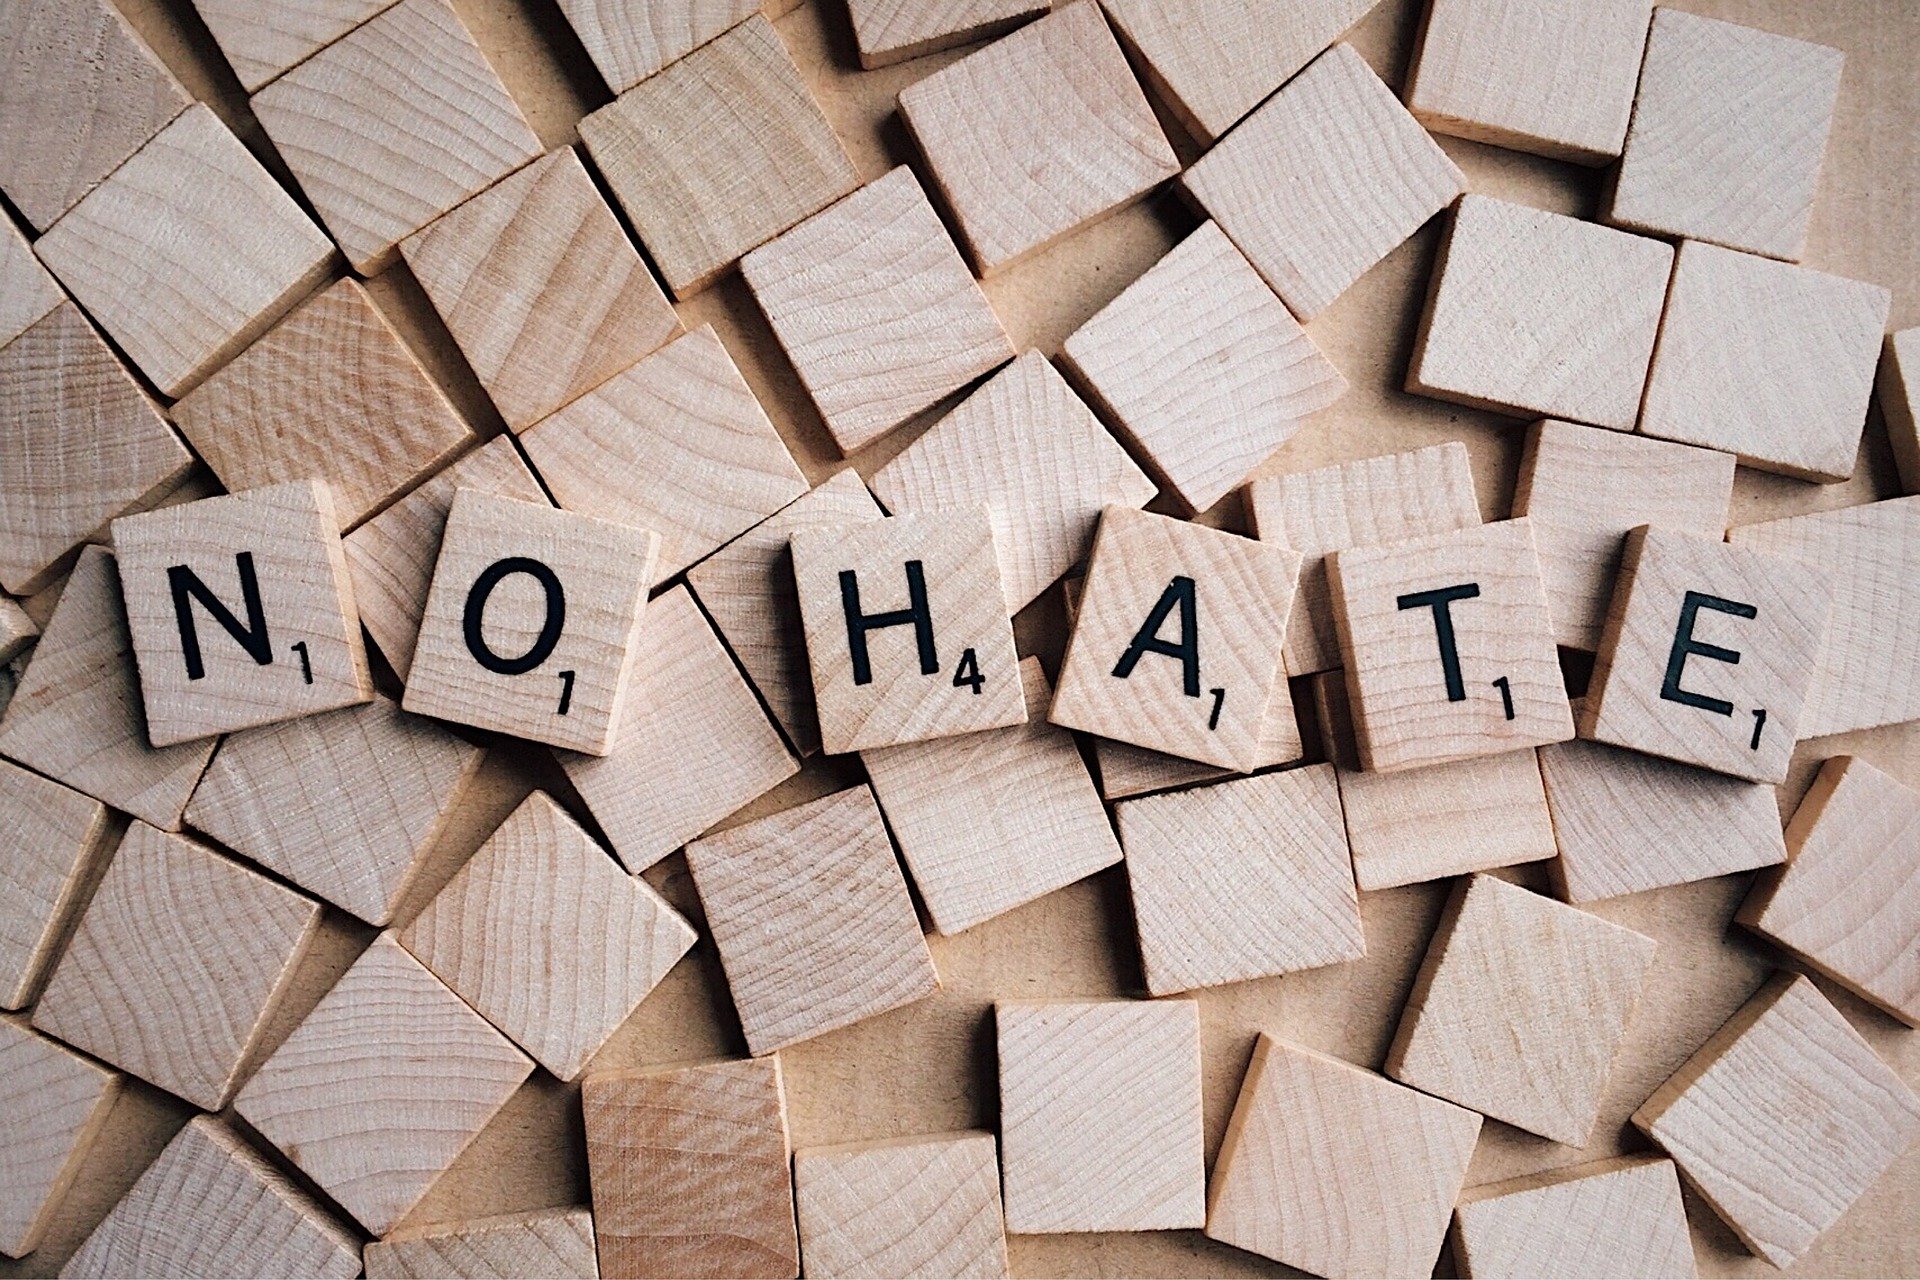 Aus Spielsteinen sind die Worte "no hate" gelegt.